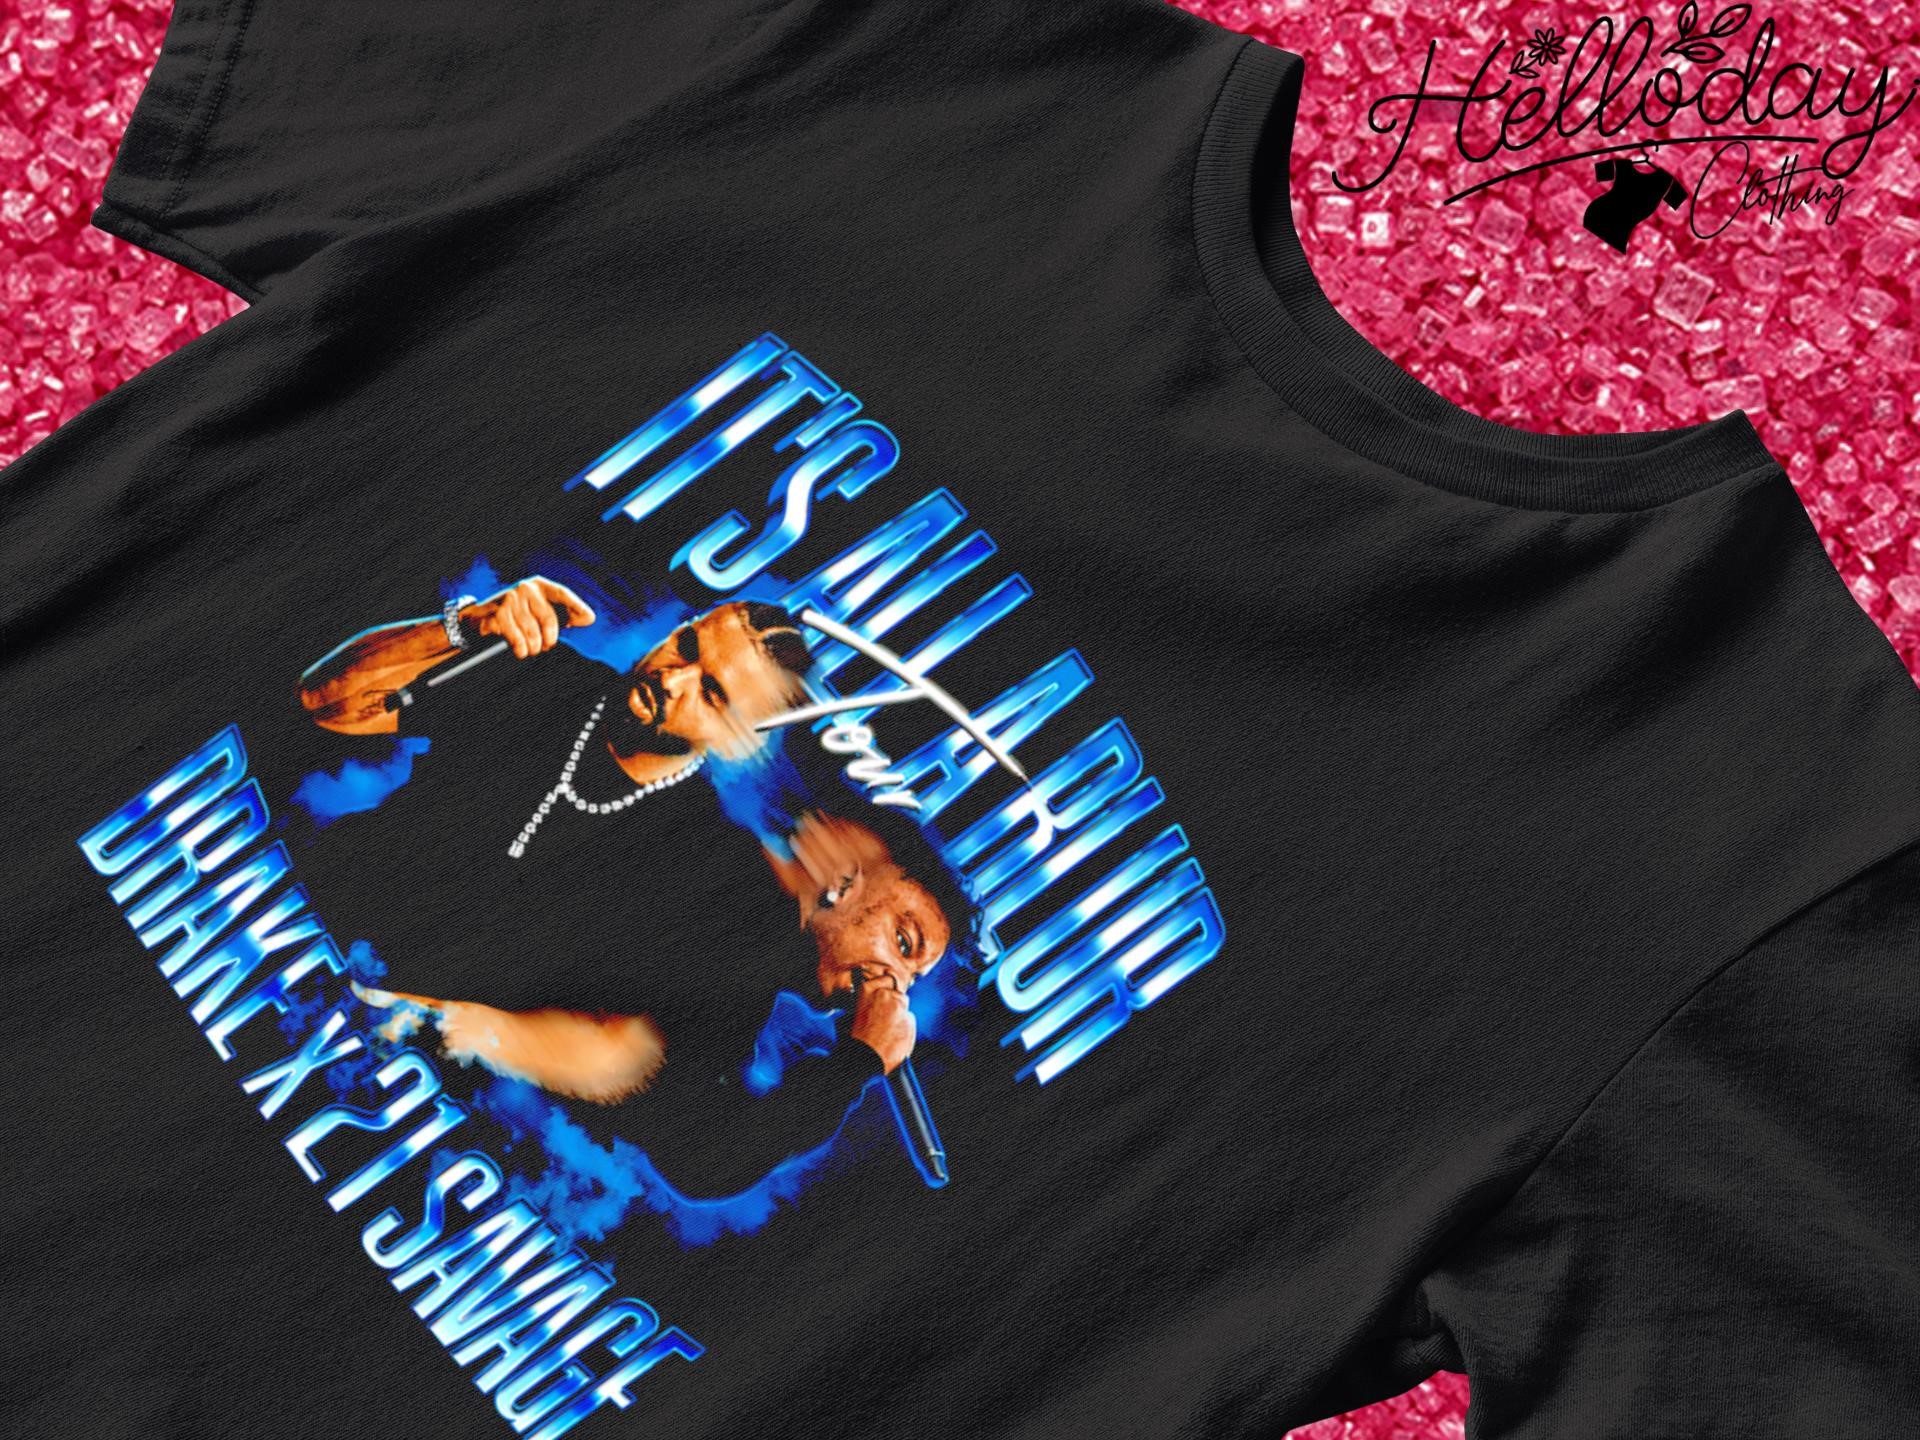 It's all a blur tour Drake X 21 Savage shirt